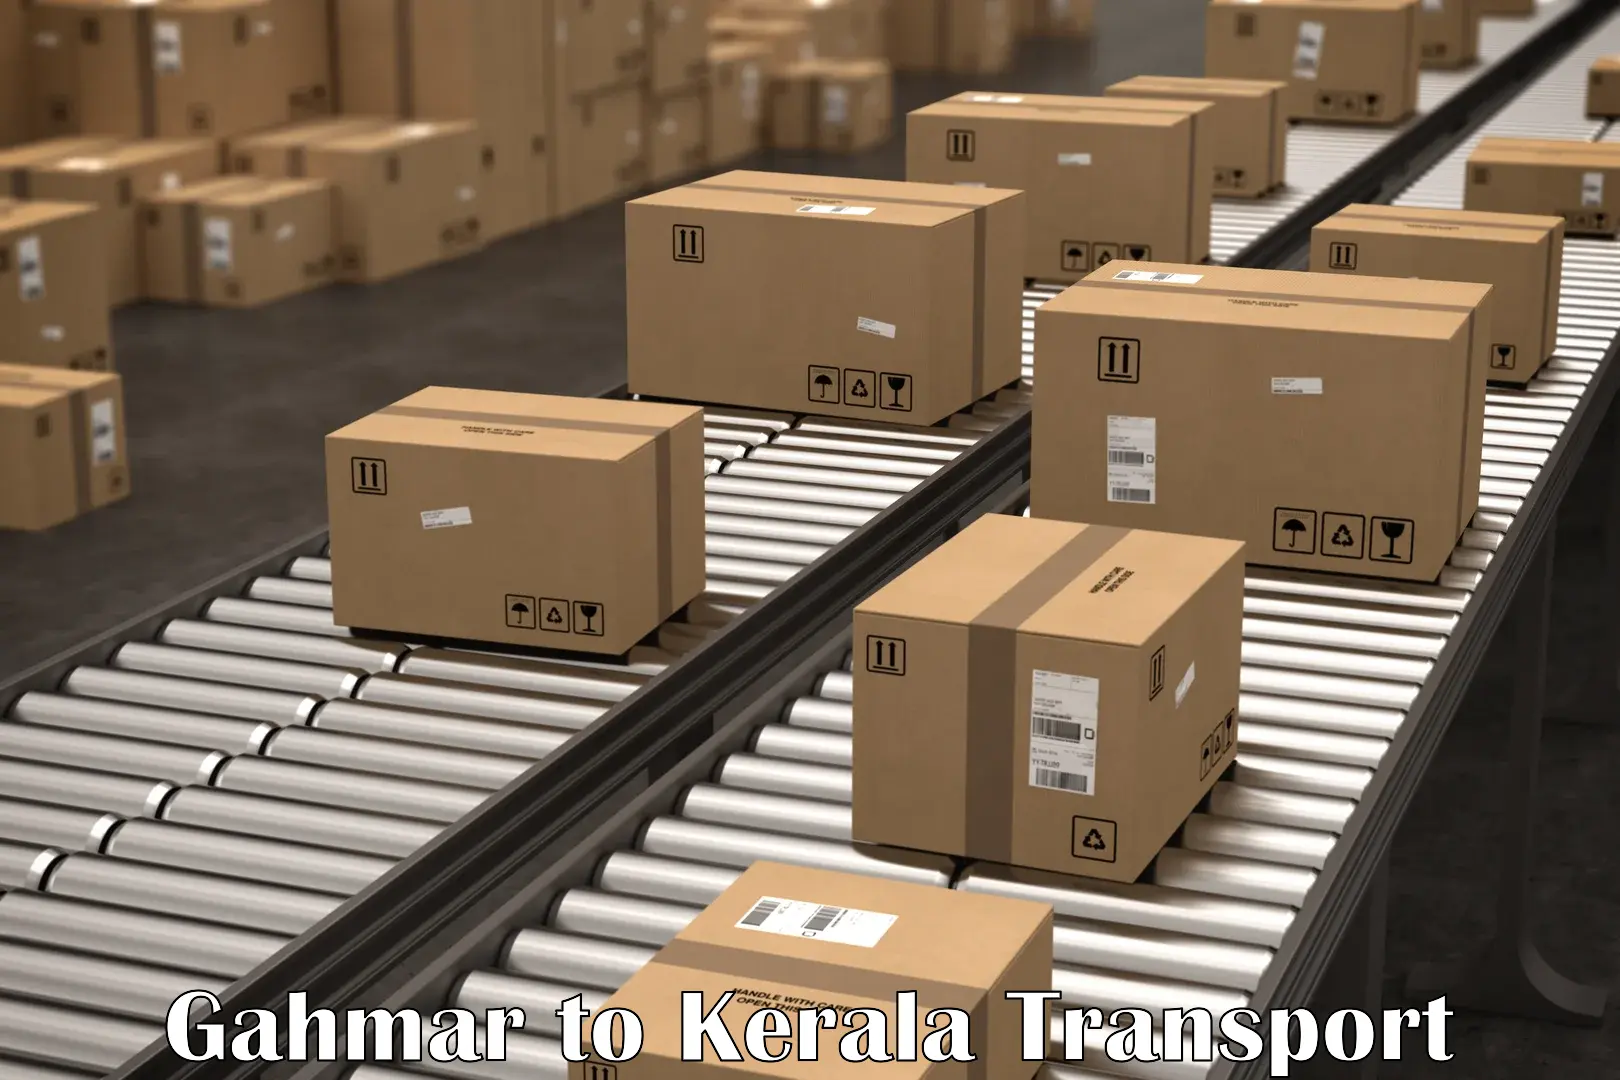 Logistics transportation services Gahmar to Chervathur